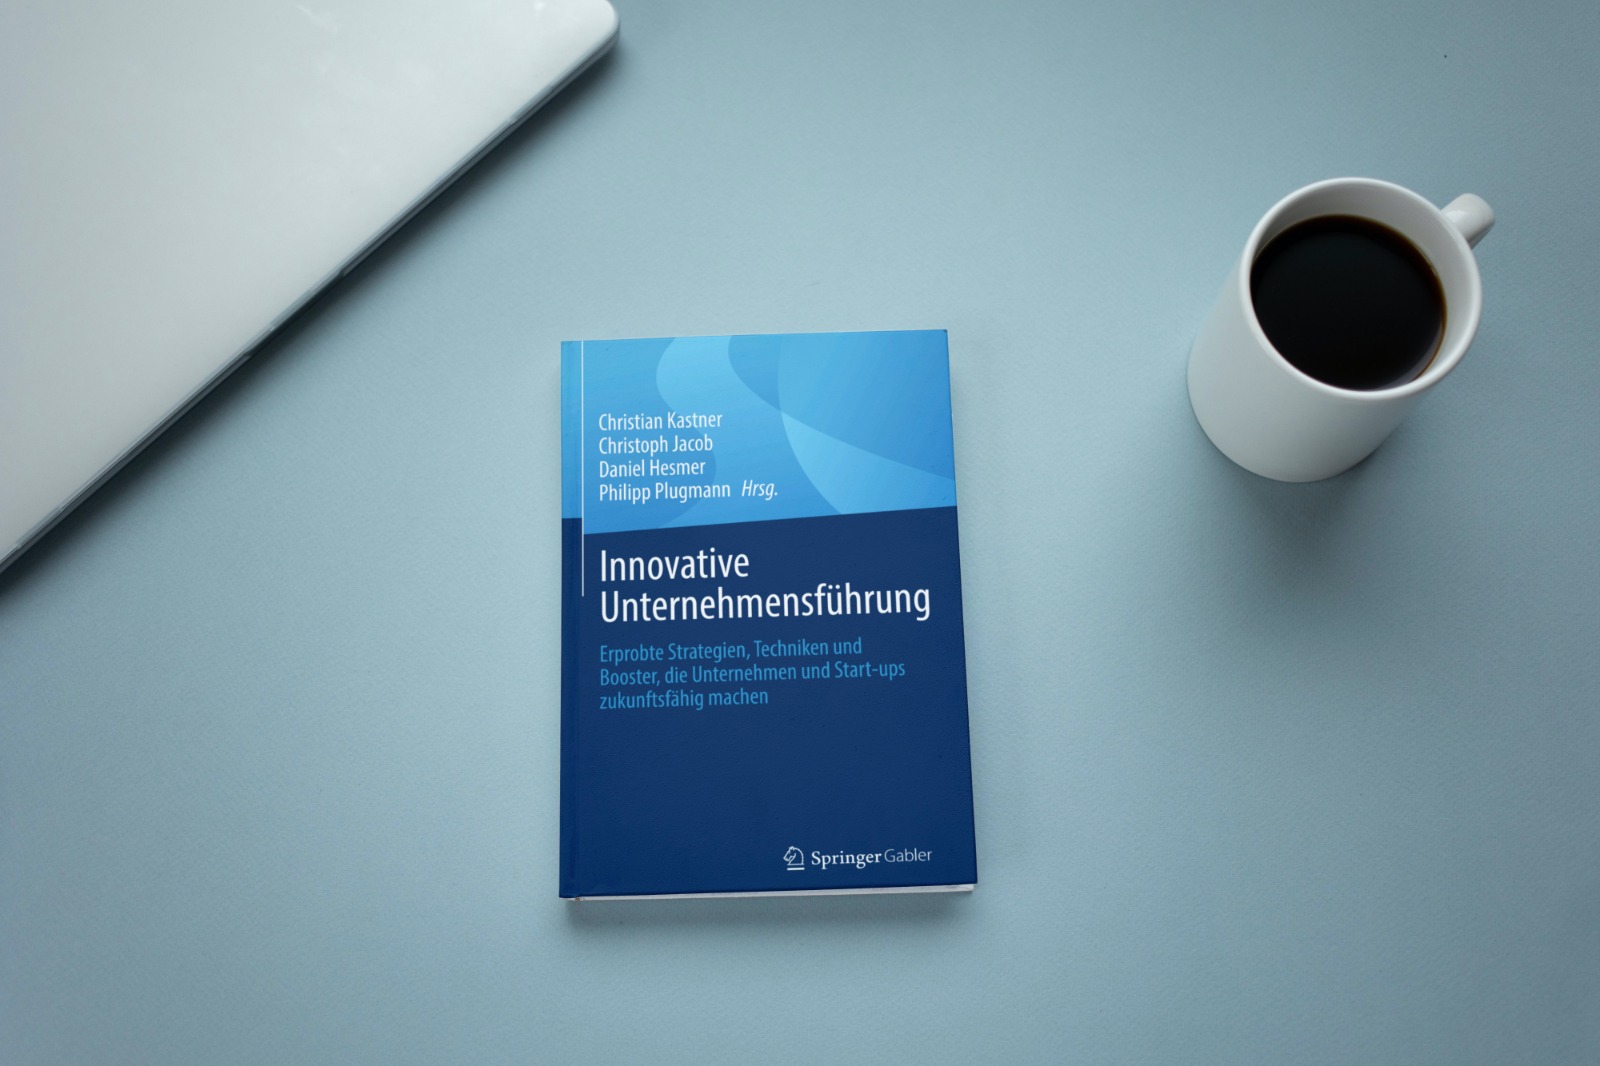 Neues Buchprojekt: Innovative Unternehmensführung - Mitautor